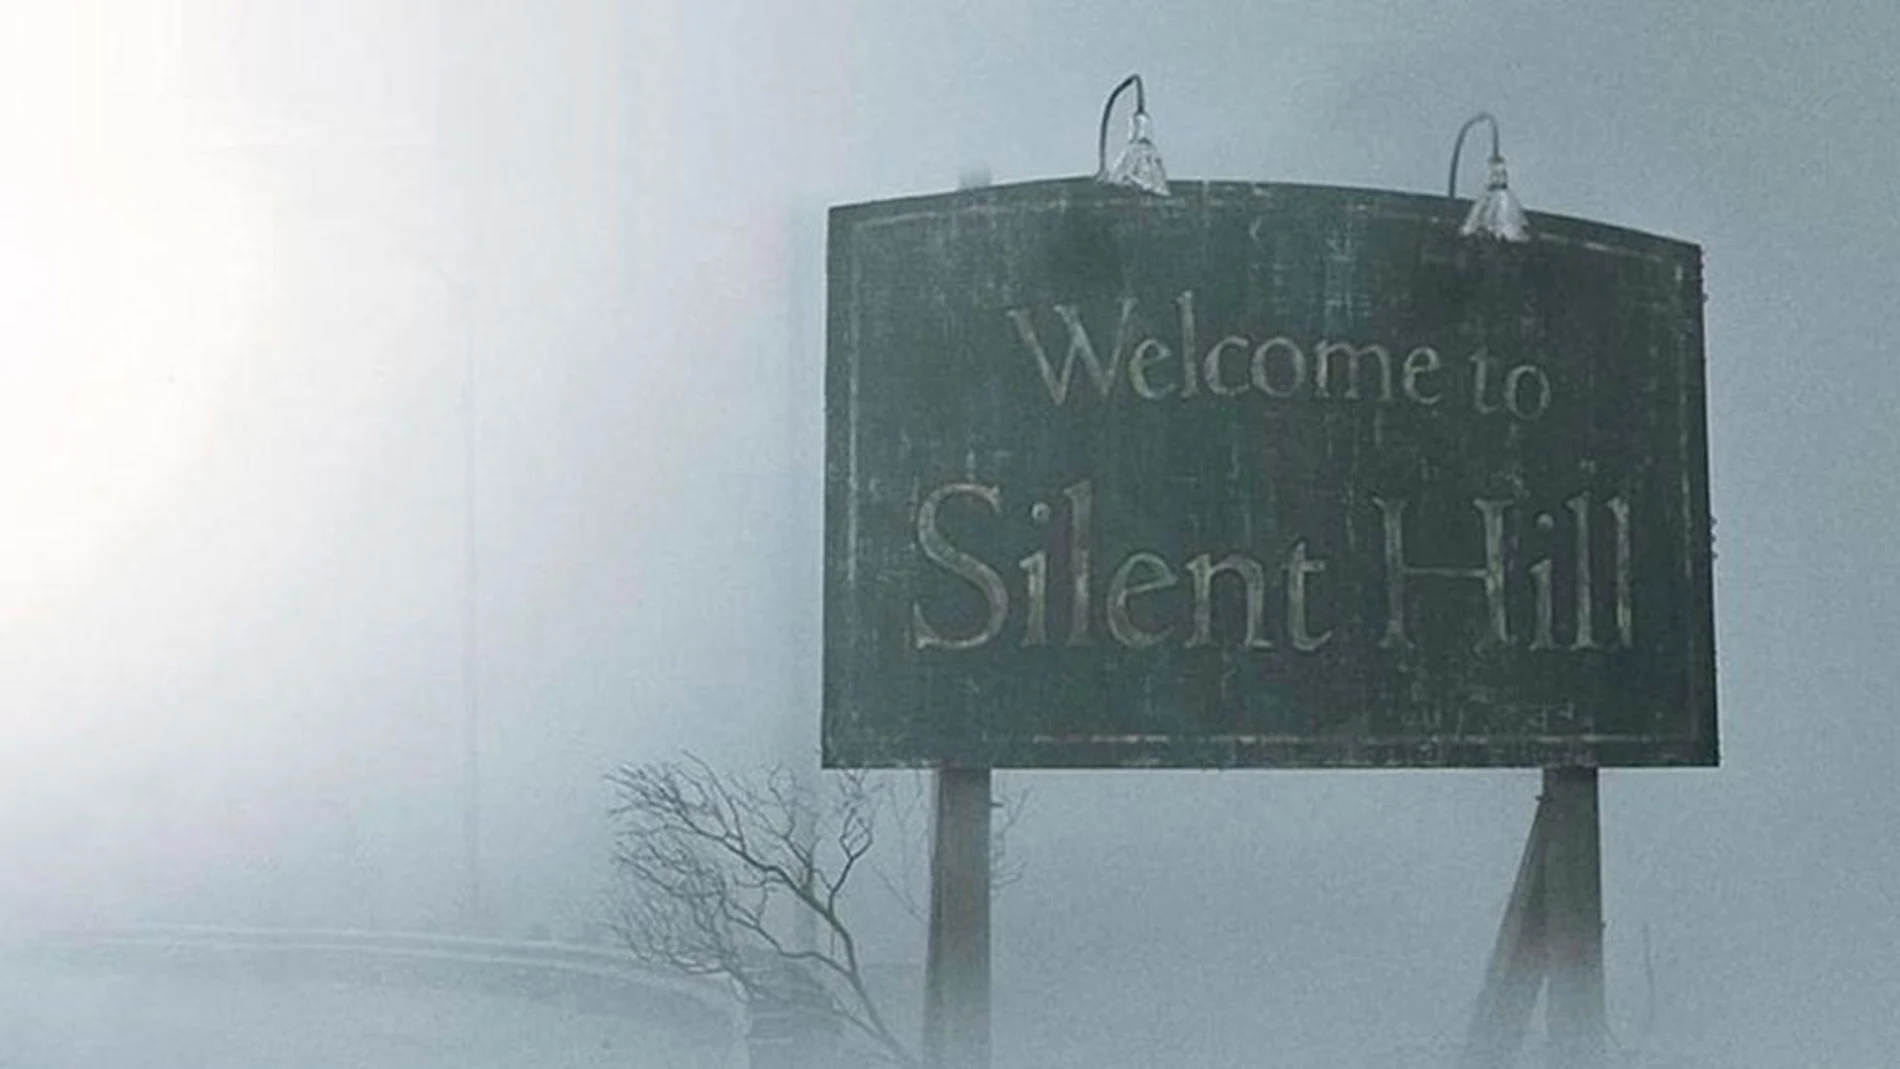 Silent Hill se encuentra huérfano de dominio en Internet.